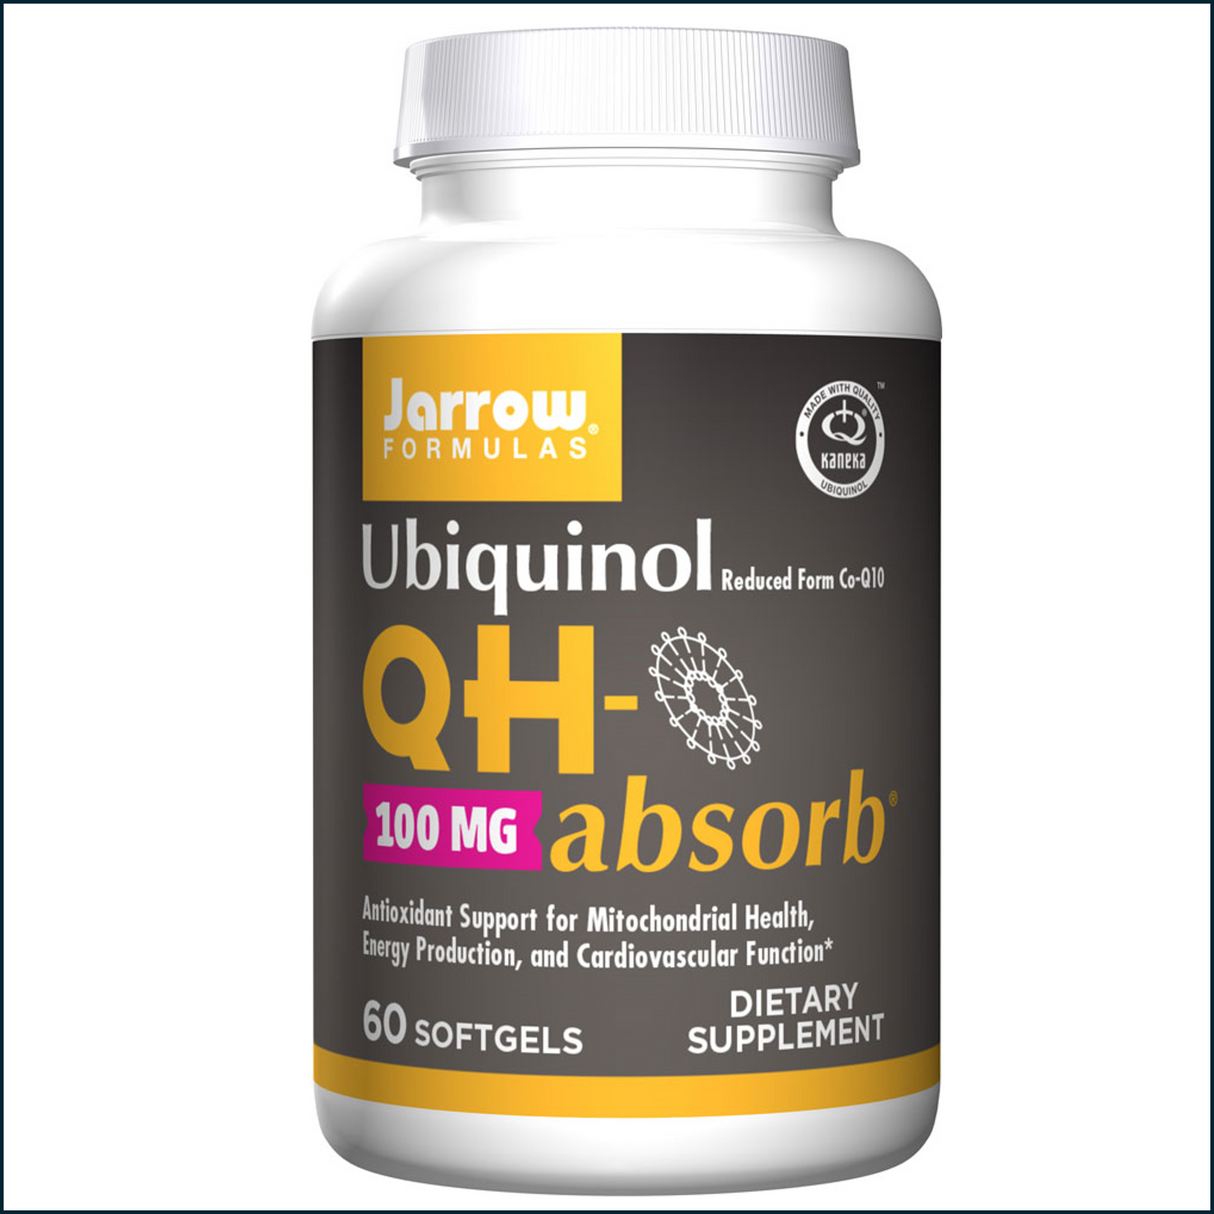 Jarrow Formulas Ubiquinol QH-absorb, 100mg 60 SoftGels